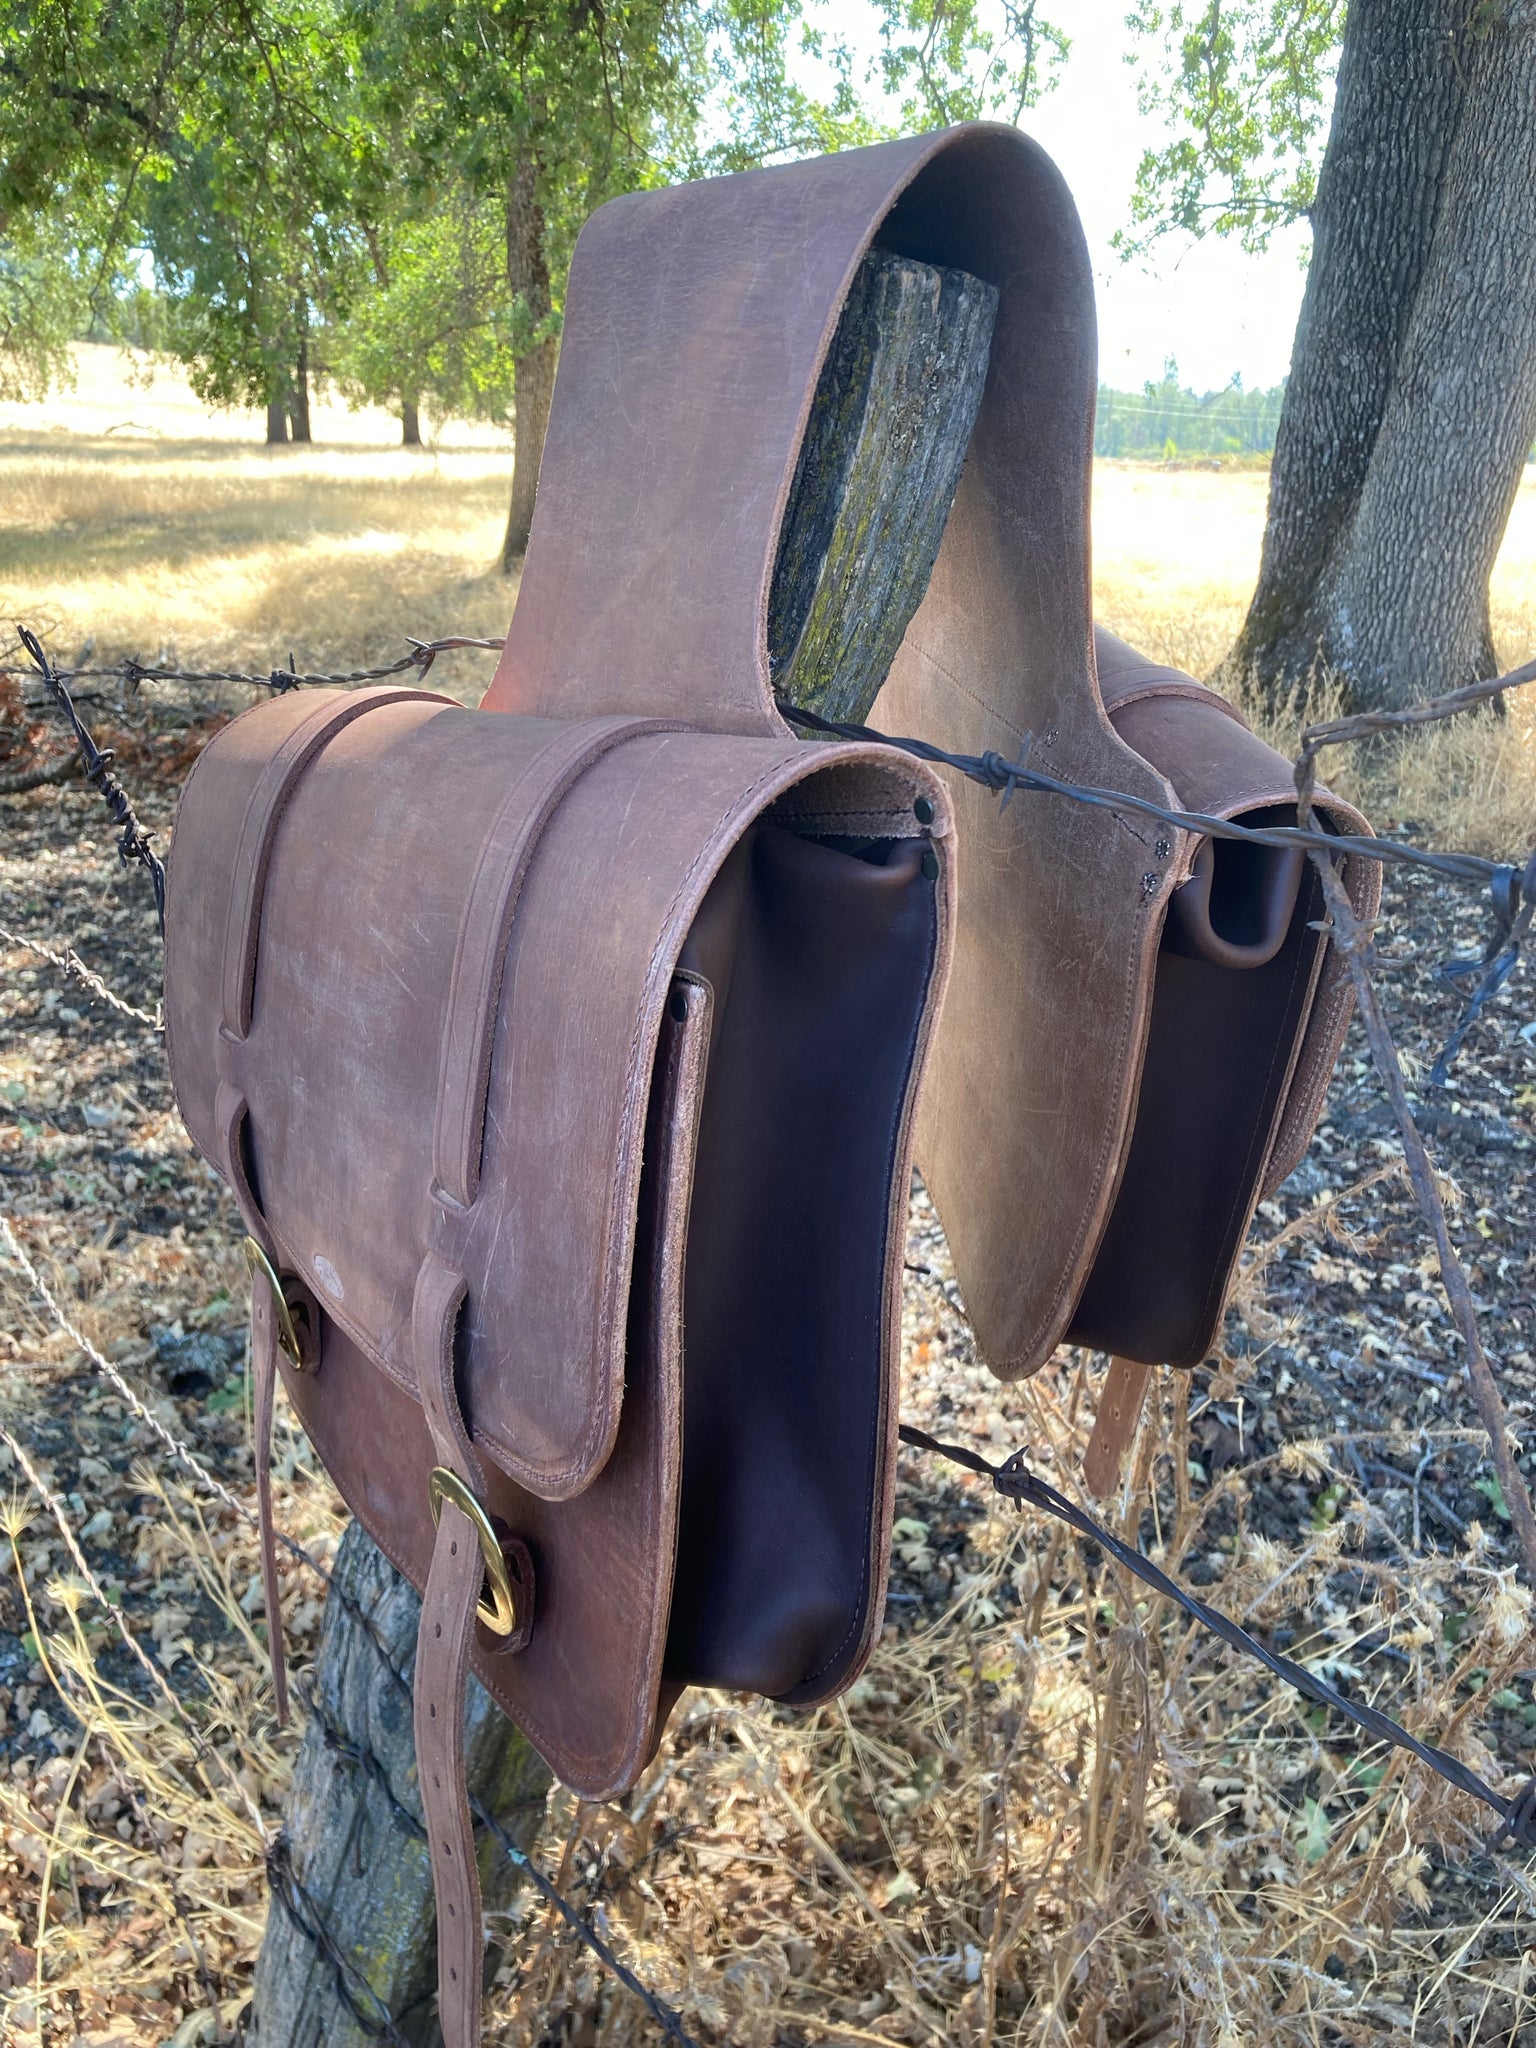 Leather bag with western saddle - saddle bag - Leather - Catawiki